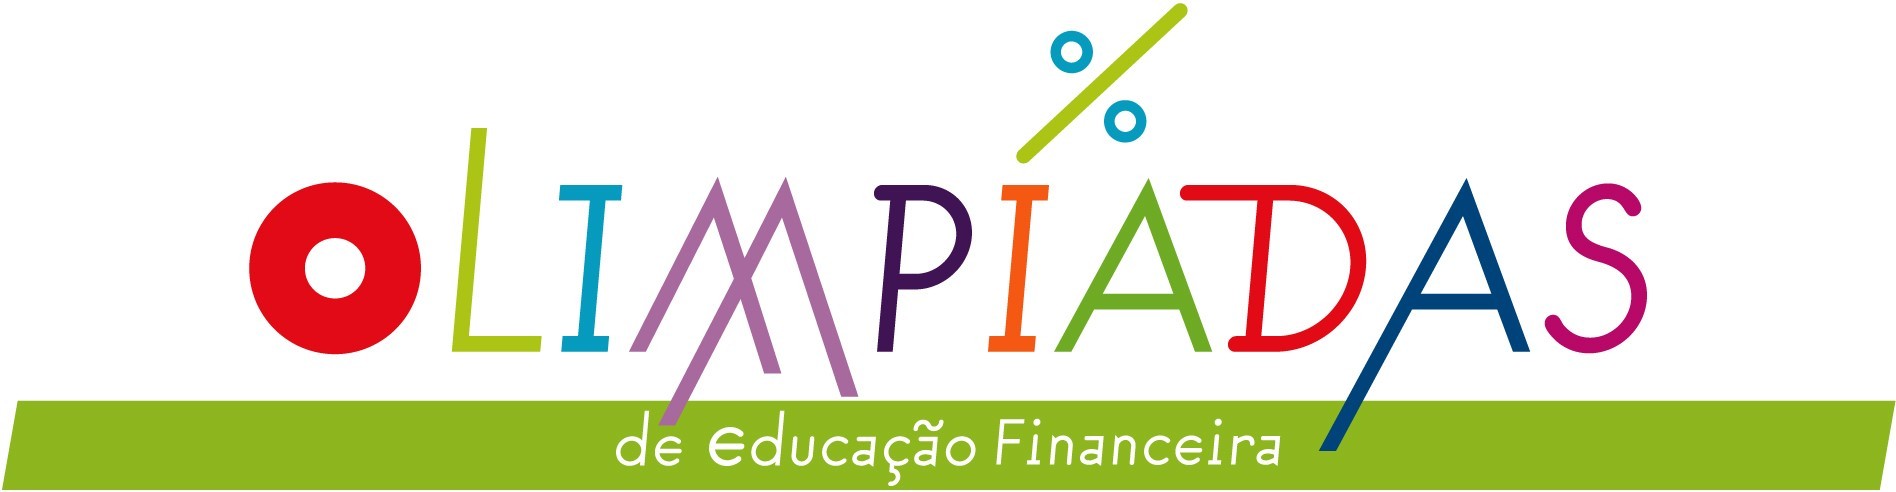 Olimpíadas de Educação Financeira